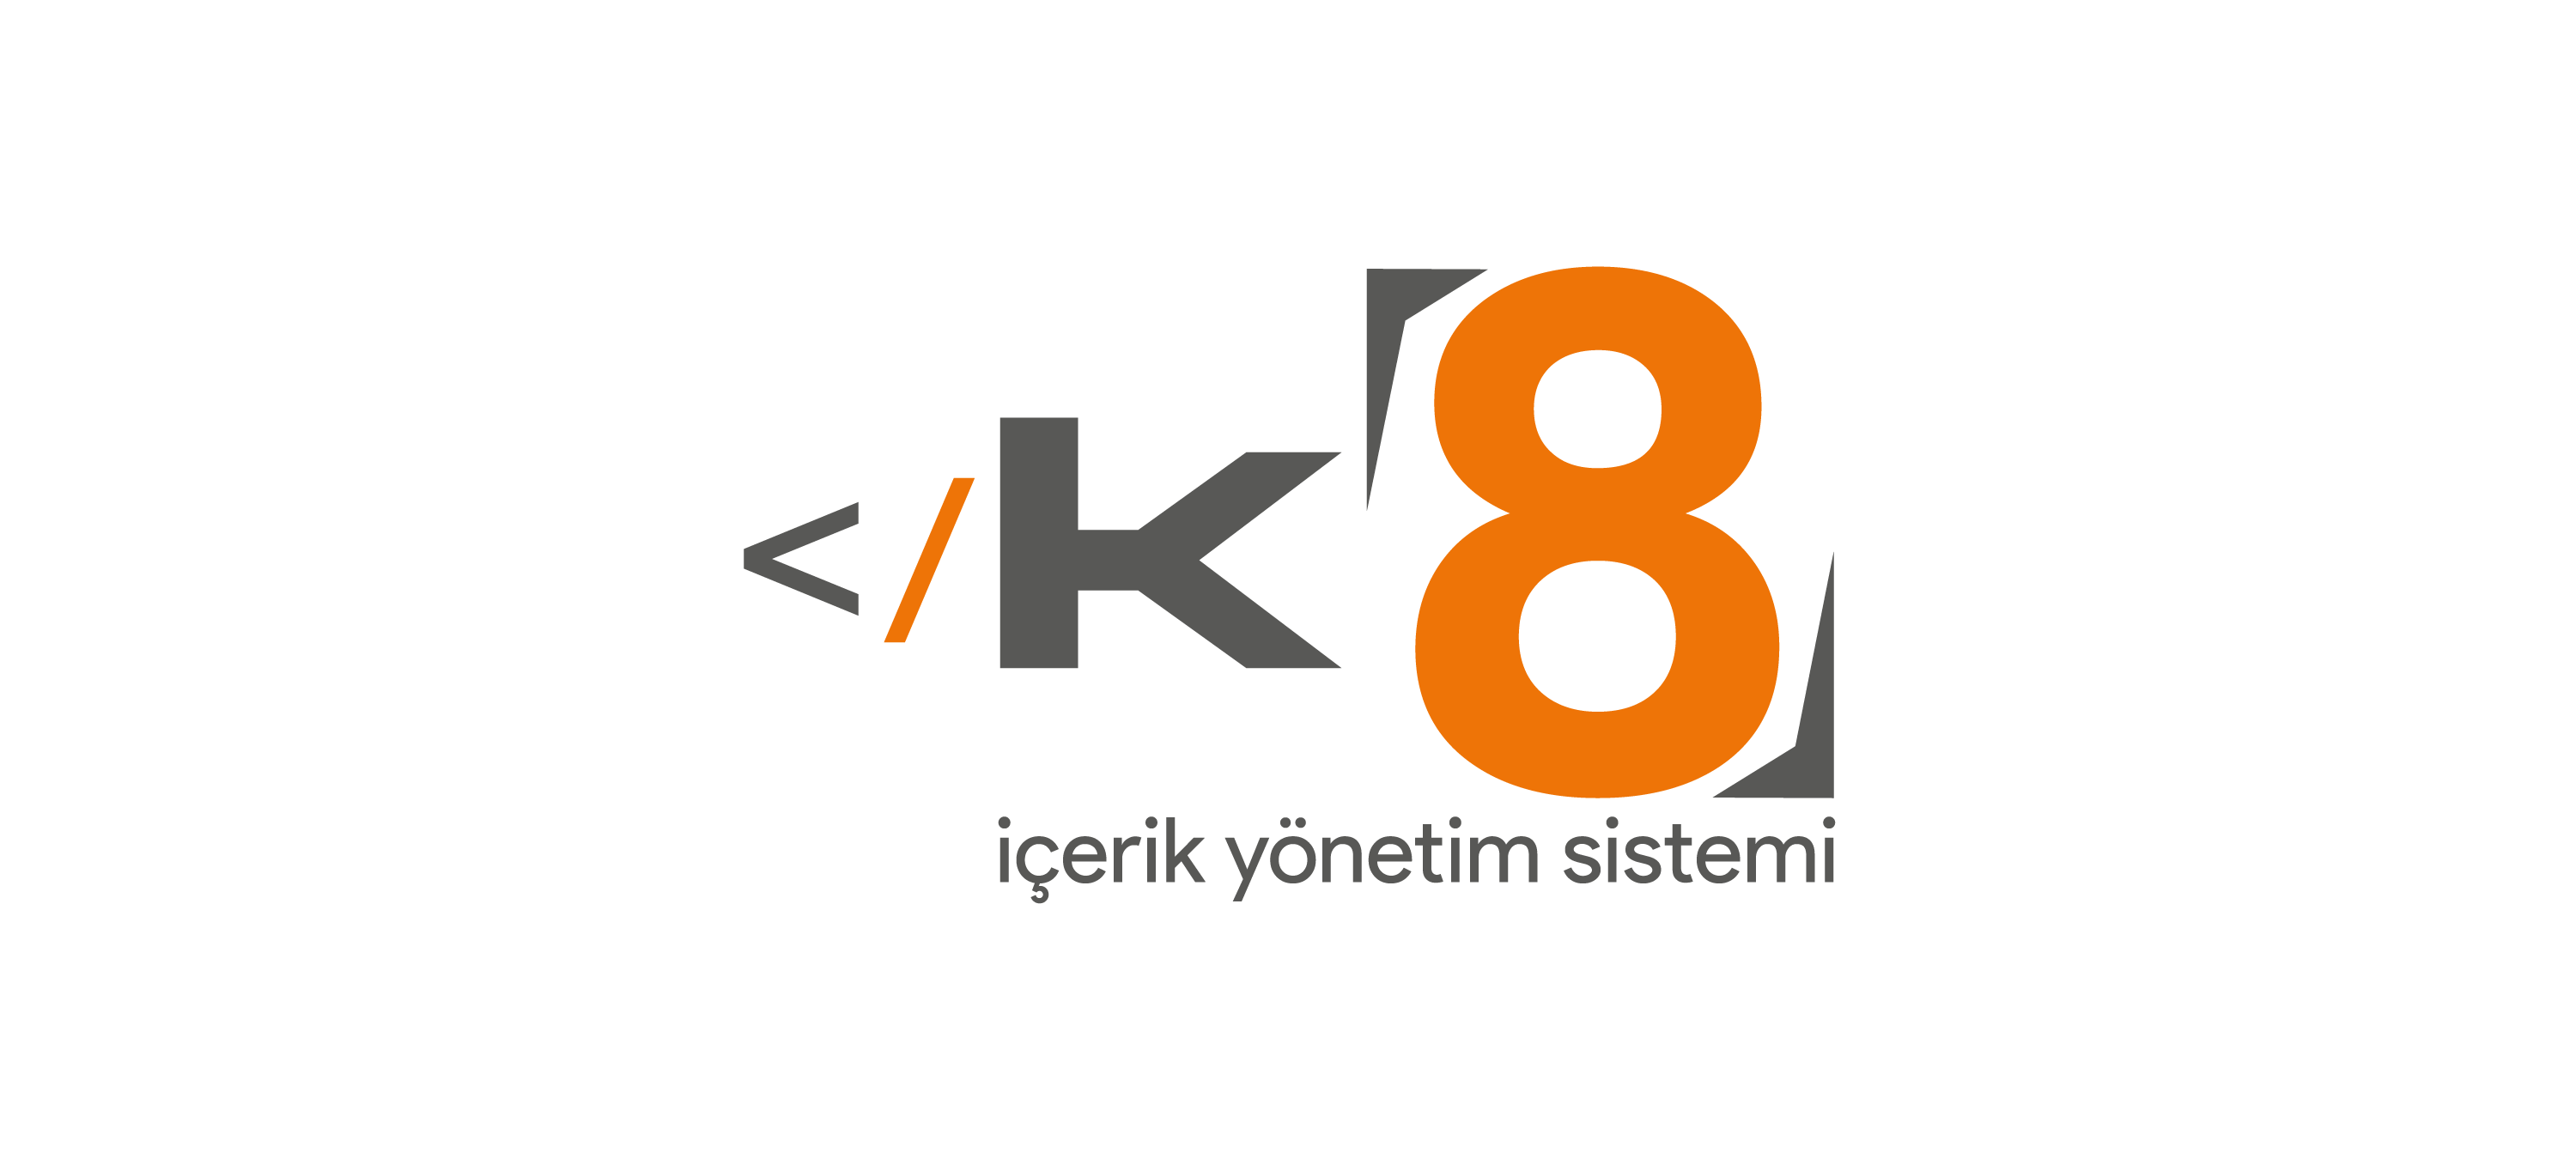 K8 İçerik Yönetim Sistemi